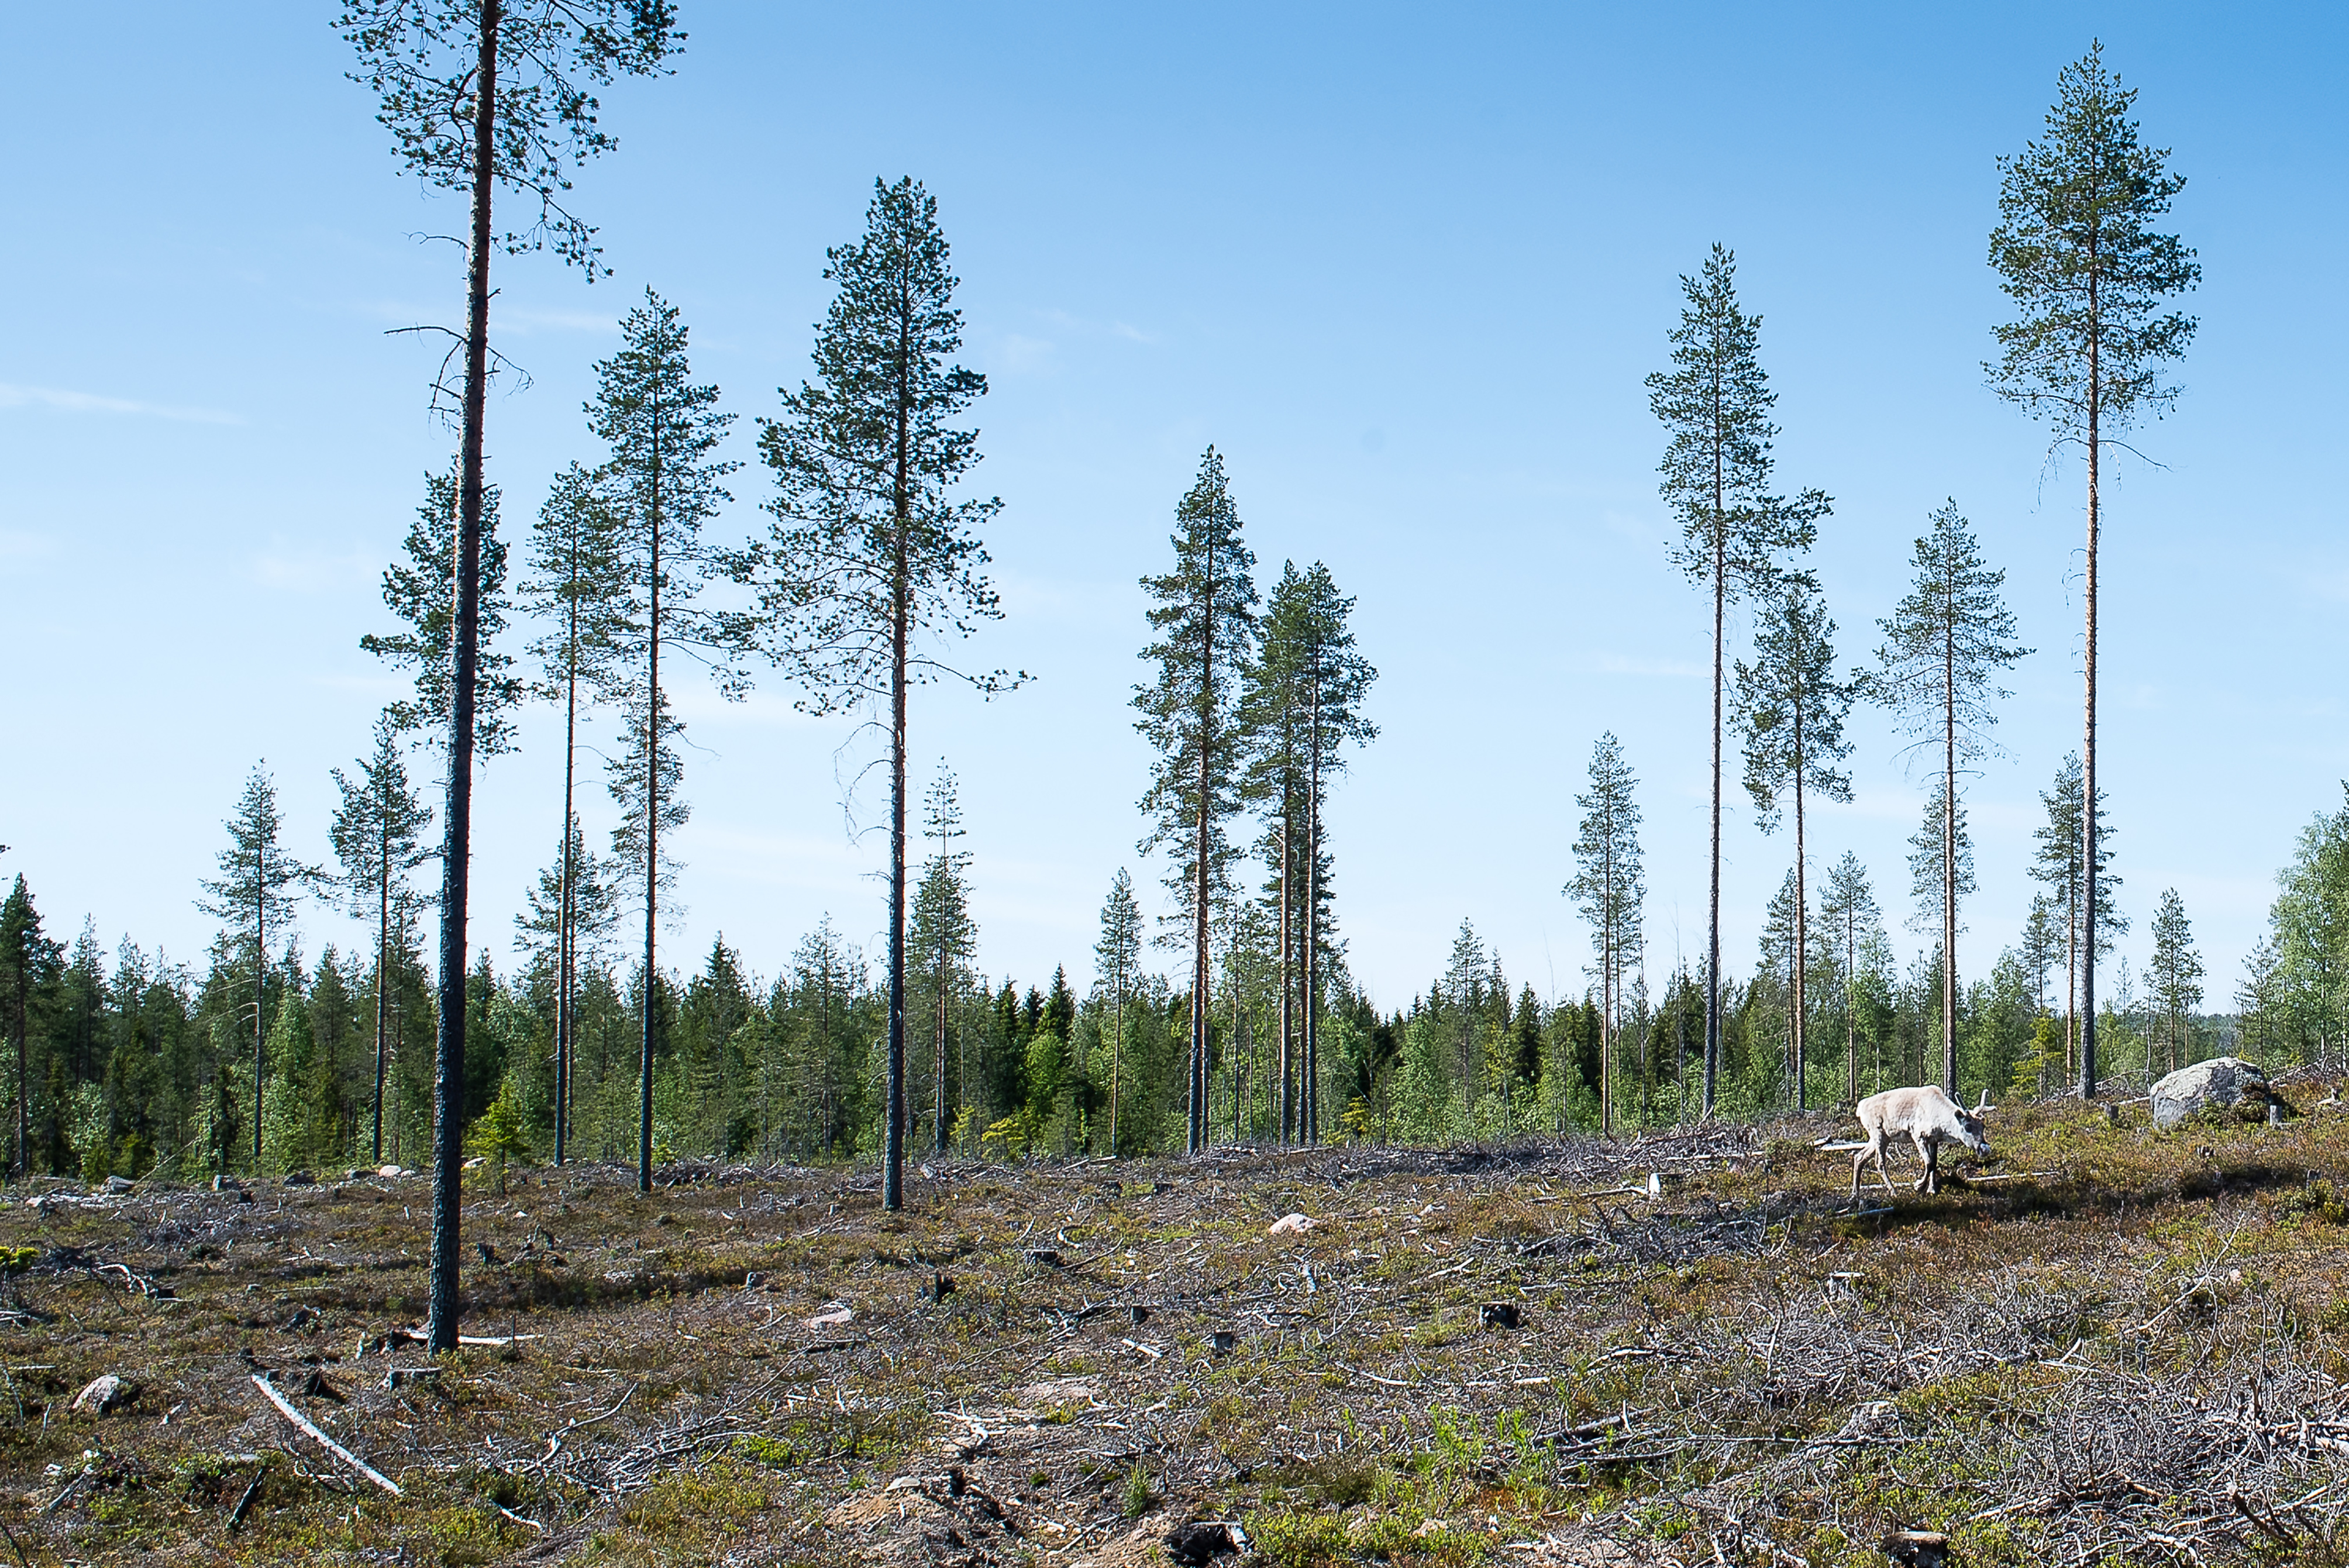 Rovaniemellä Lapissa sijaitsevassa männikössä tehtiin muutama vuosi sitten siemenpuuhakkuu, mutta ala ei ole vielä taimettunut. Maanmuokkausta kohteella ei tehty. (Kuvaaja: Juha Ollila)